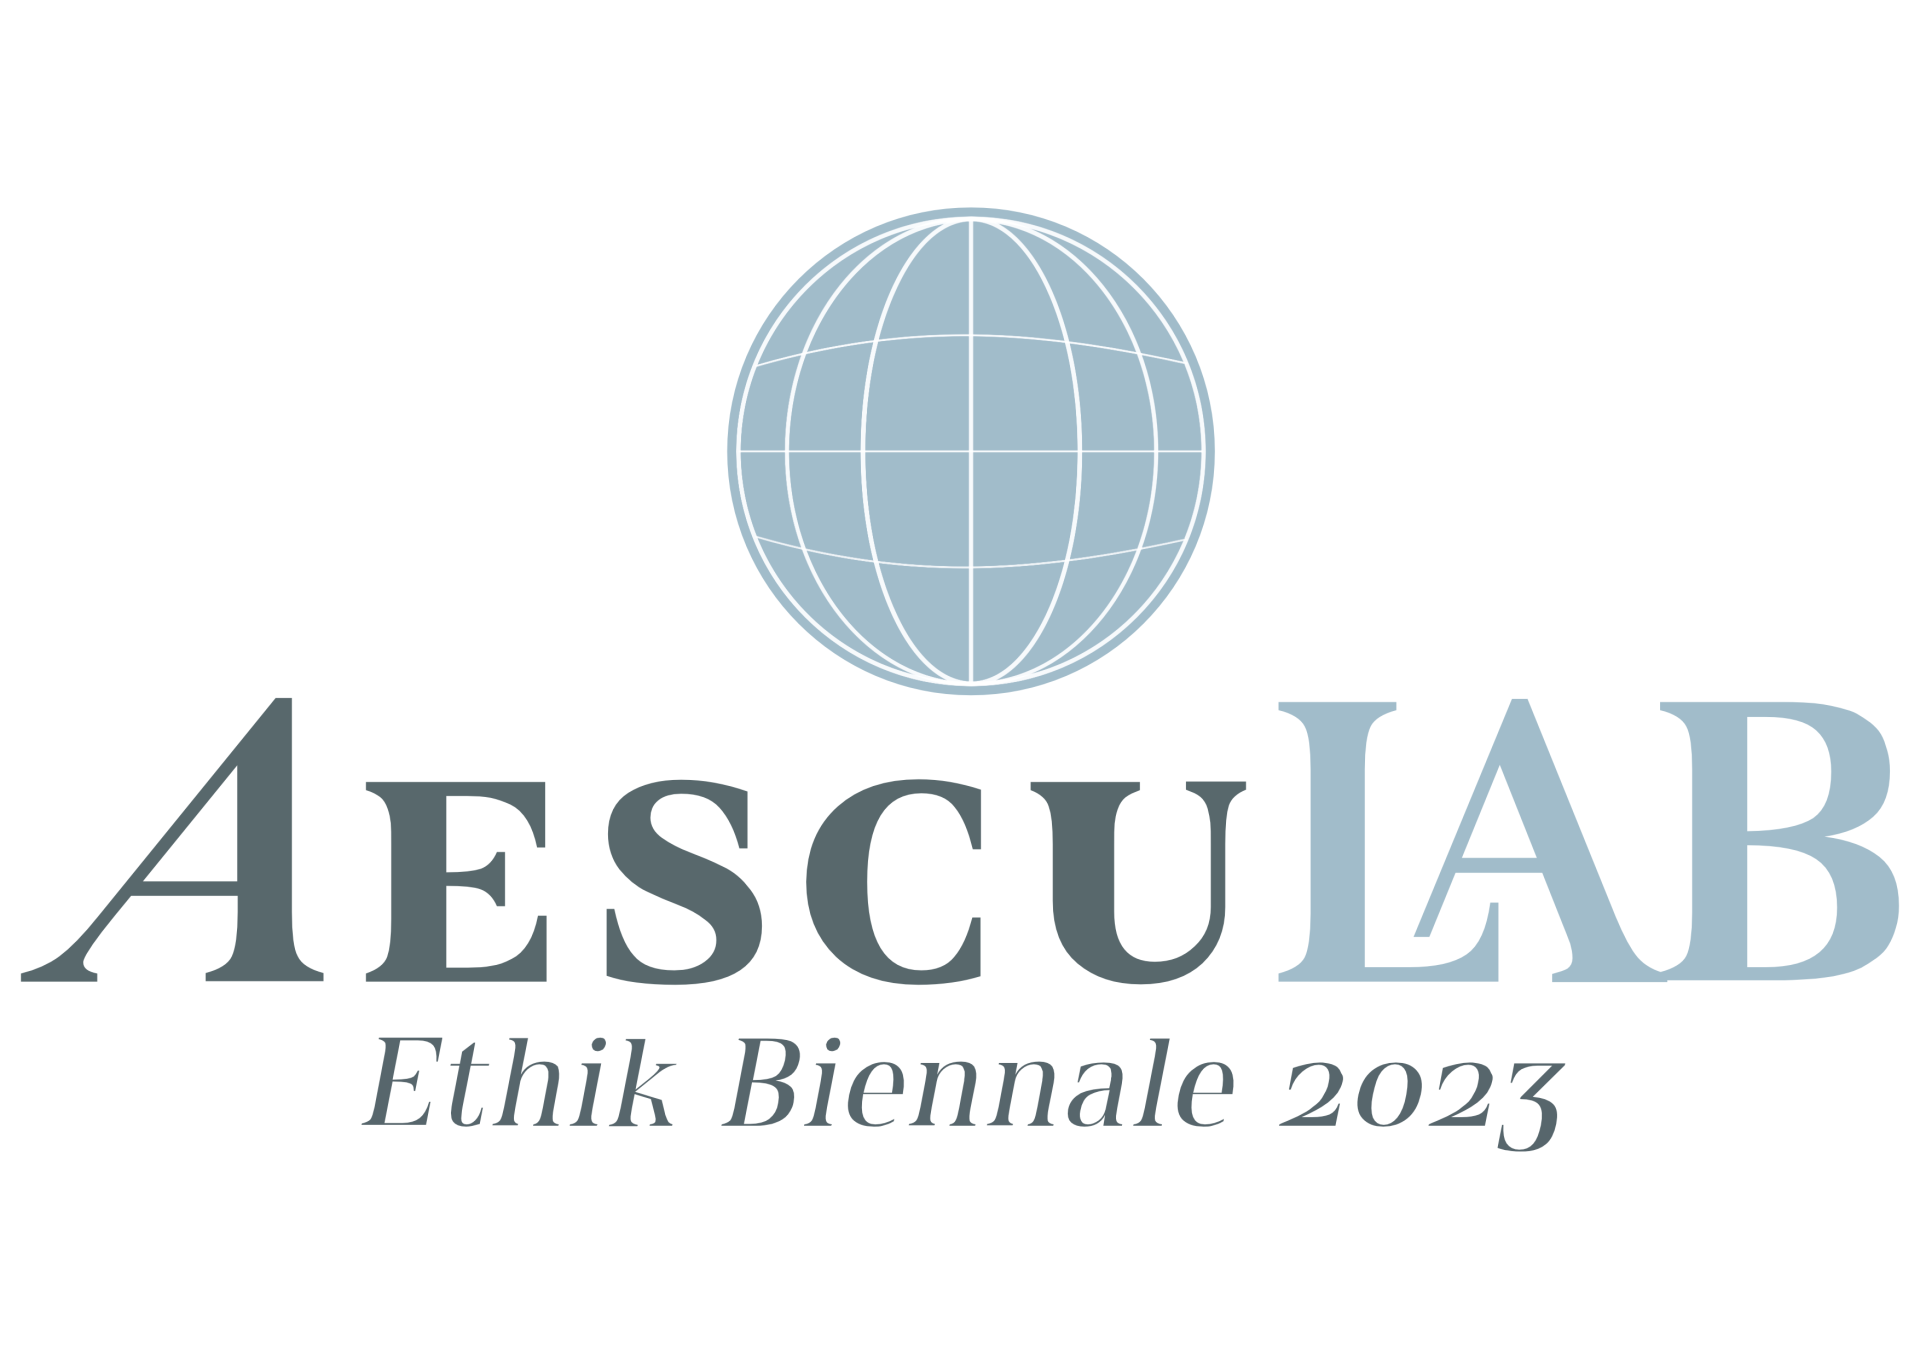 AescuLAB_Logo_Ethik Biennale_4c